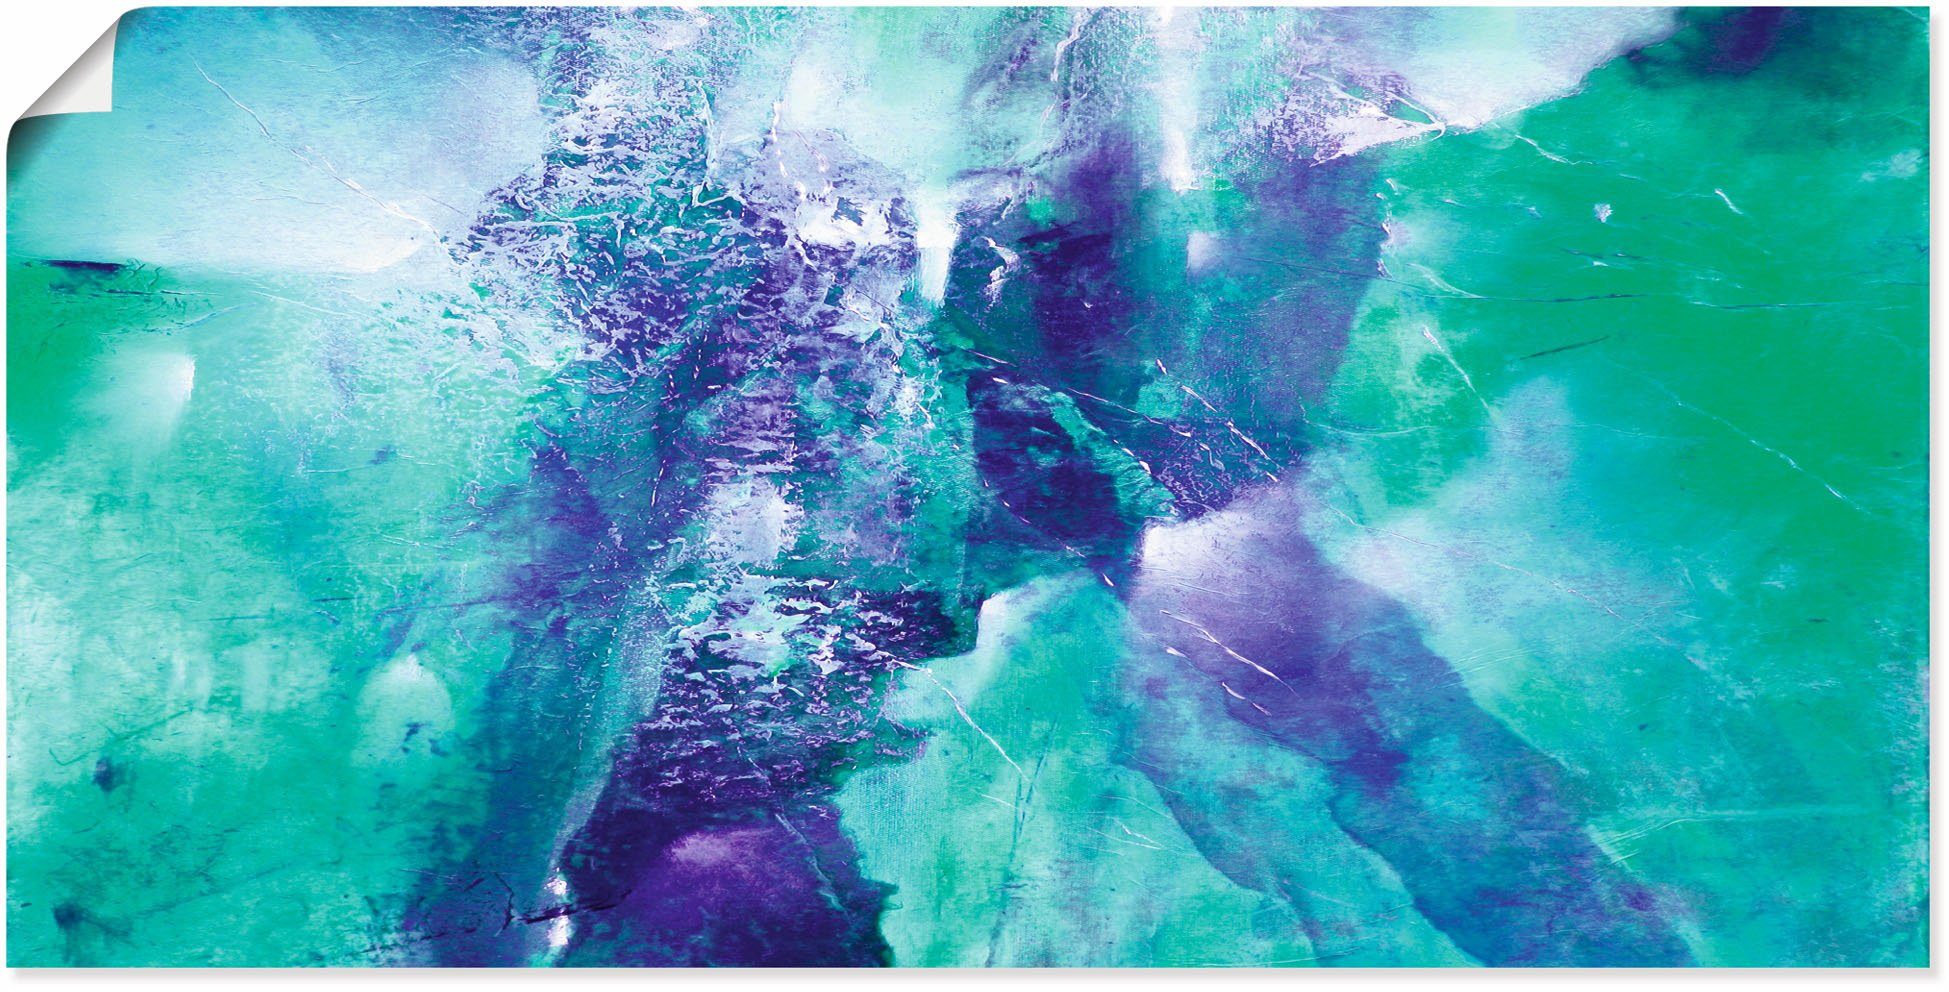 Artland Artprint Abstracte compositie groen en violet in vele afmetingen & productsoorten - artprint van aluminium / artprint voor buiten, artprint op linnen, poster, muursticker /